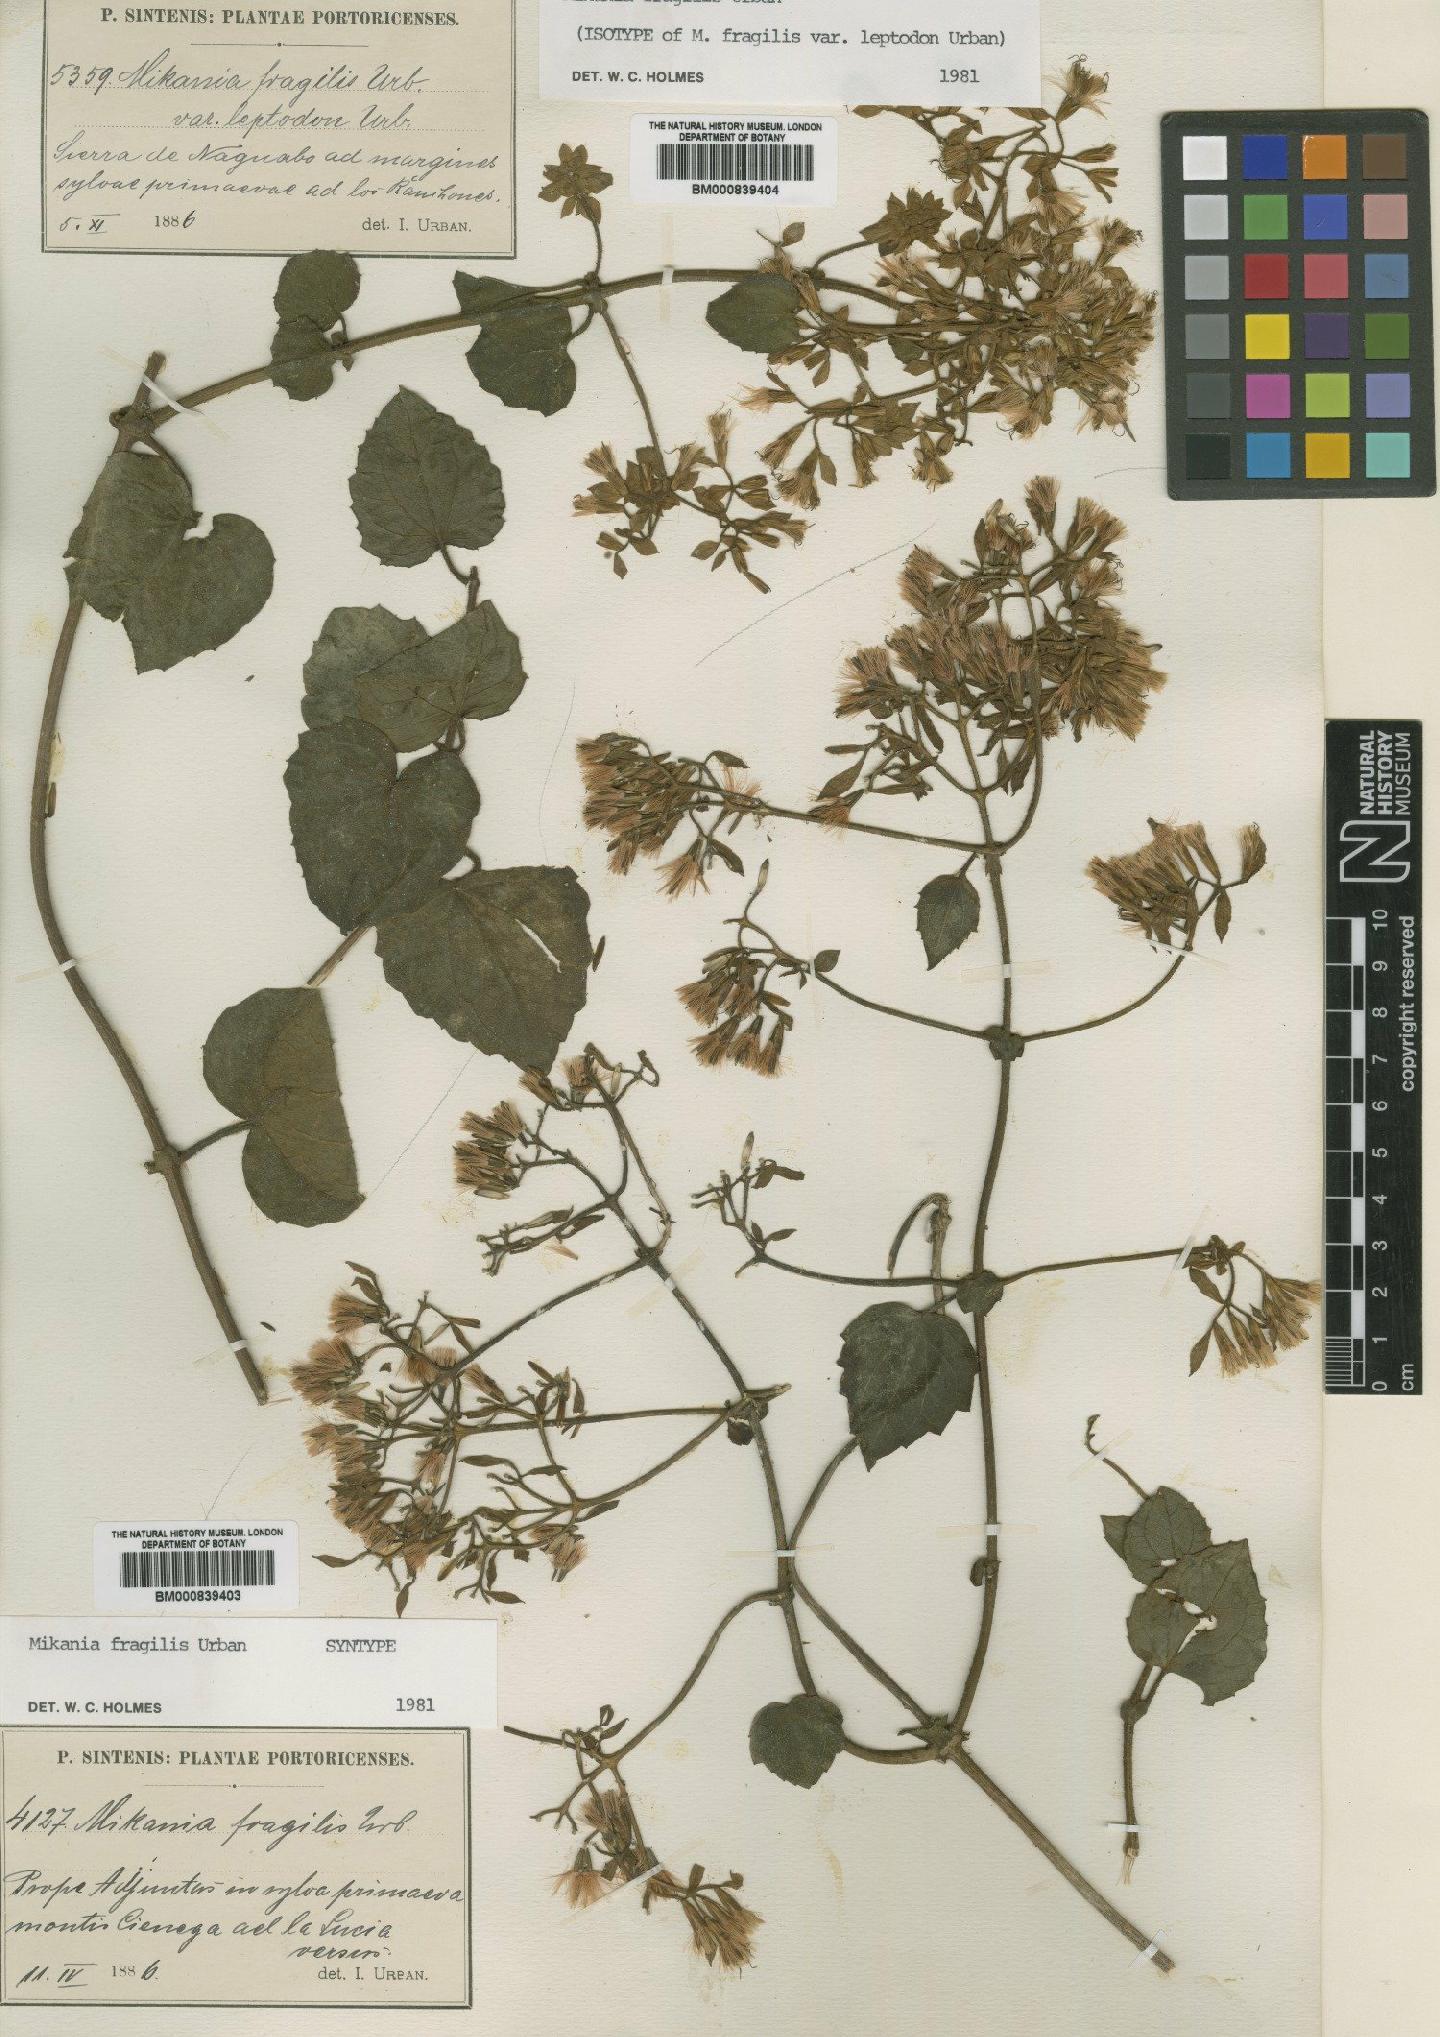 To NHMUK collection (Mikania fragilis Urb.; Syntype; NHMUK:ecatalogue:4993291)